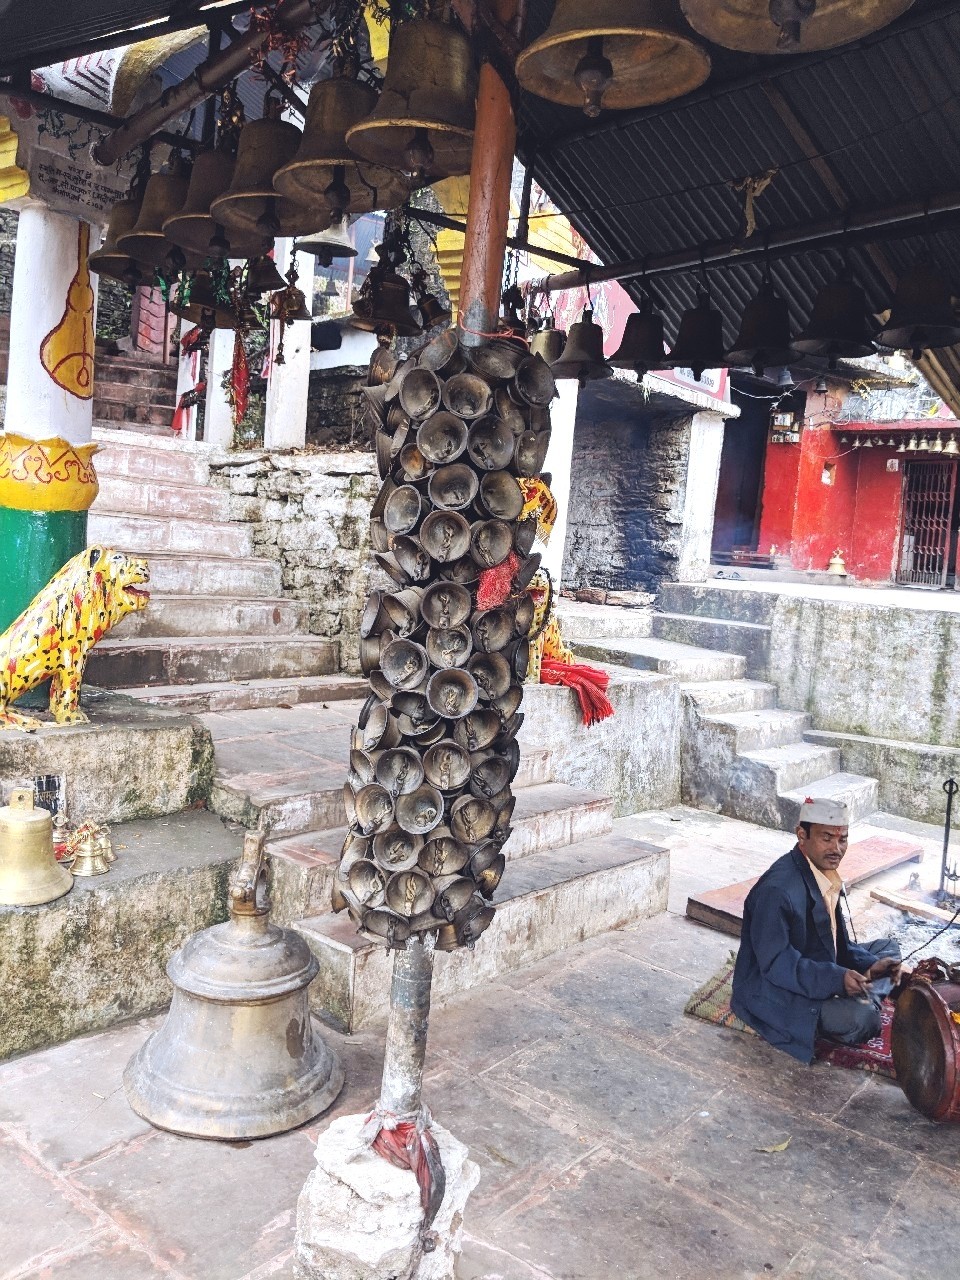 कोटगाड़ी भगवती का मंदिर, kotgari devi temple